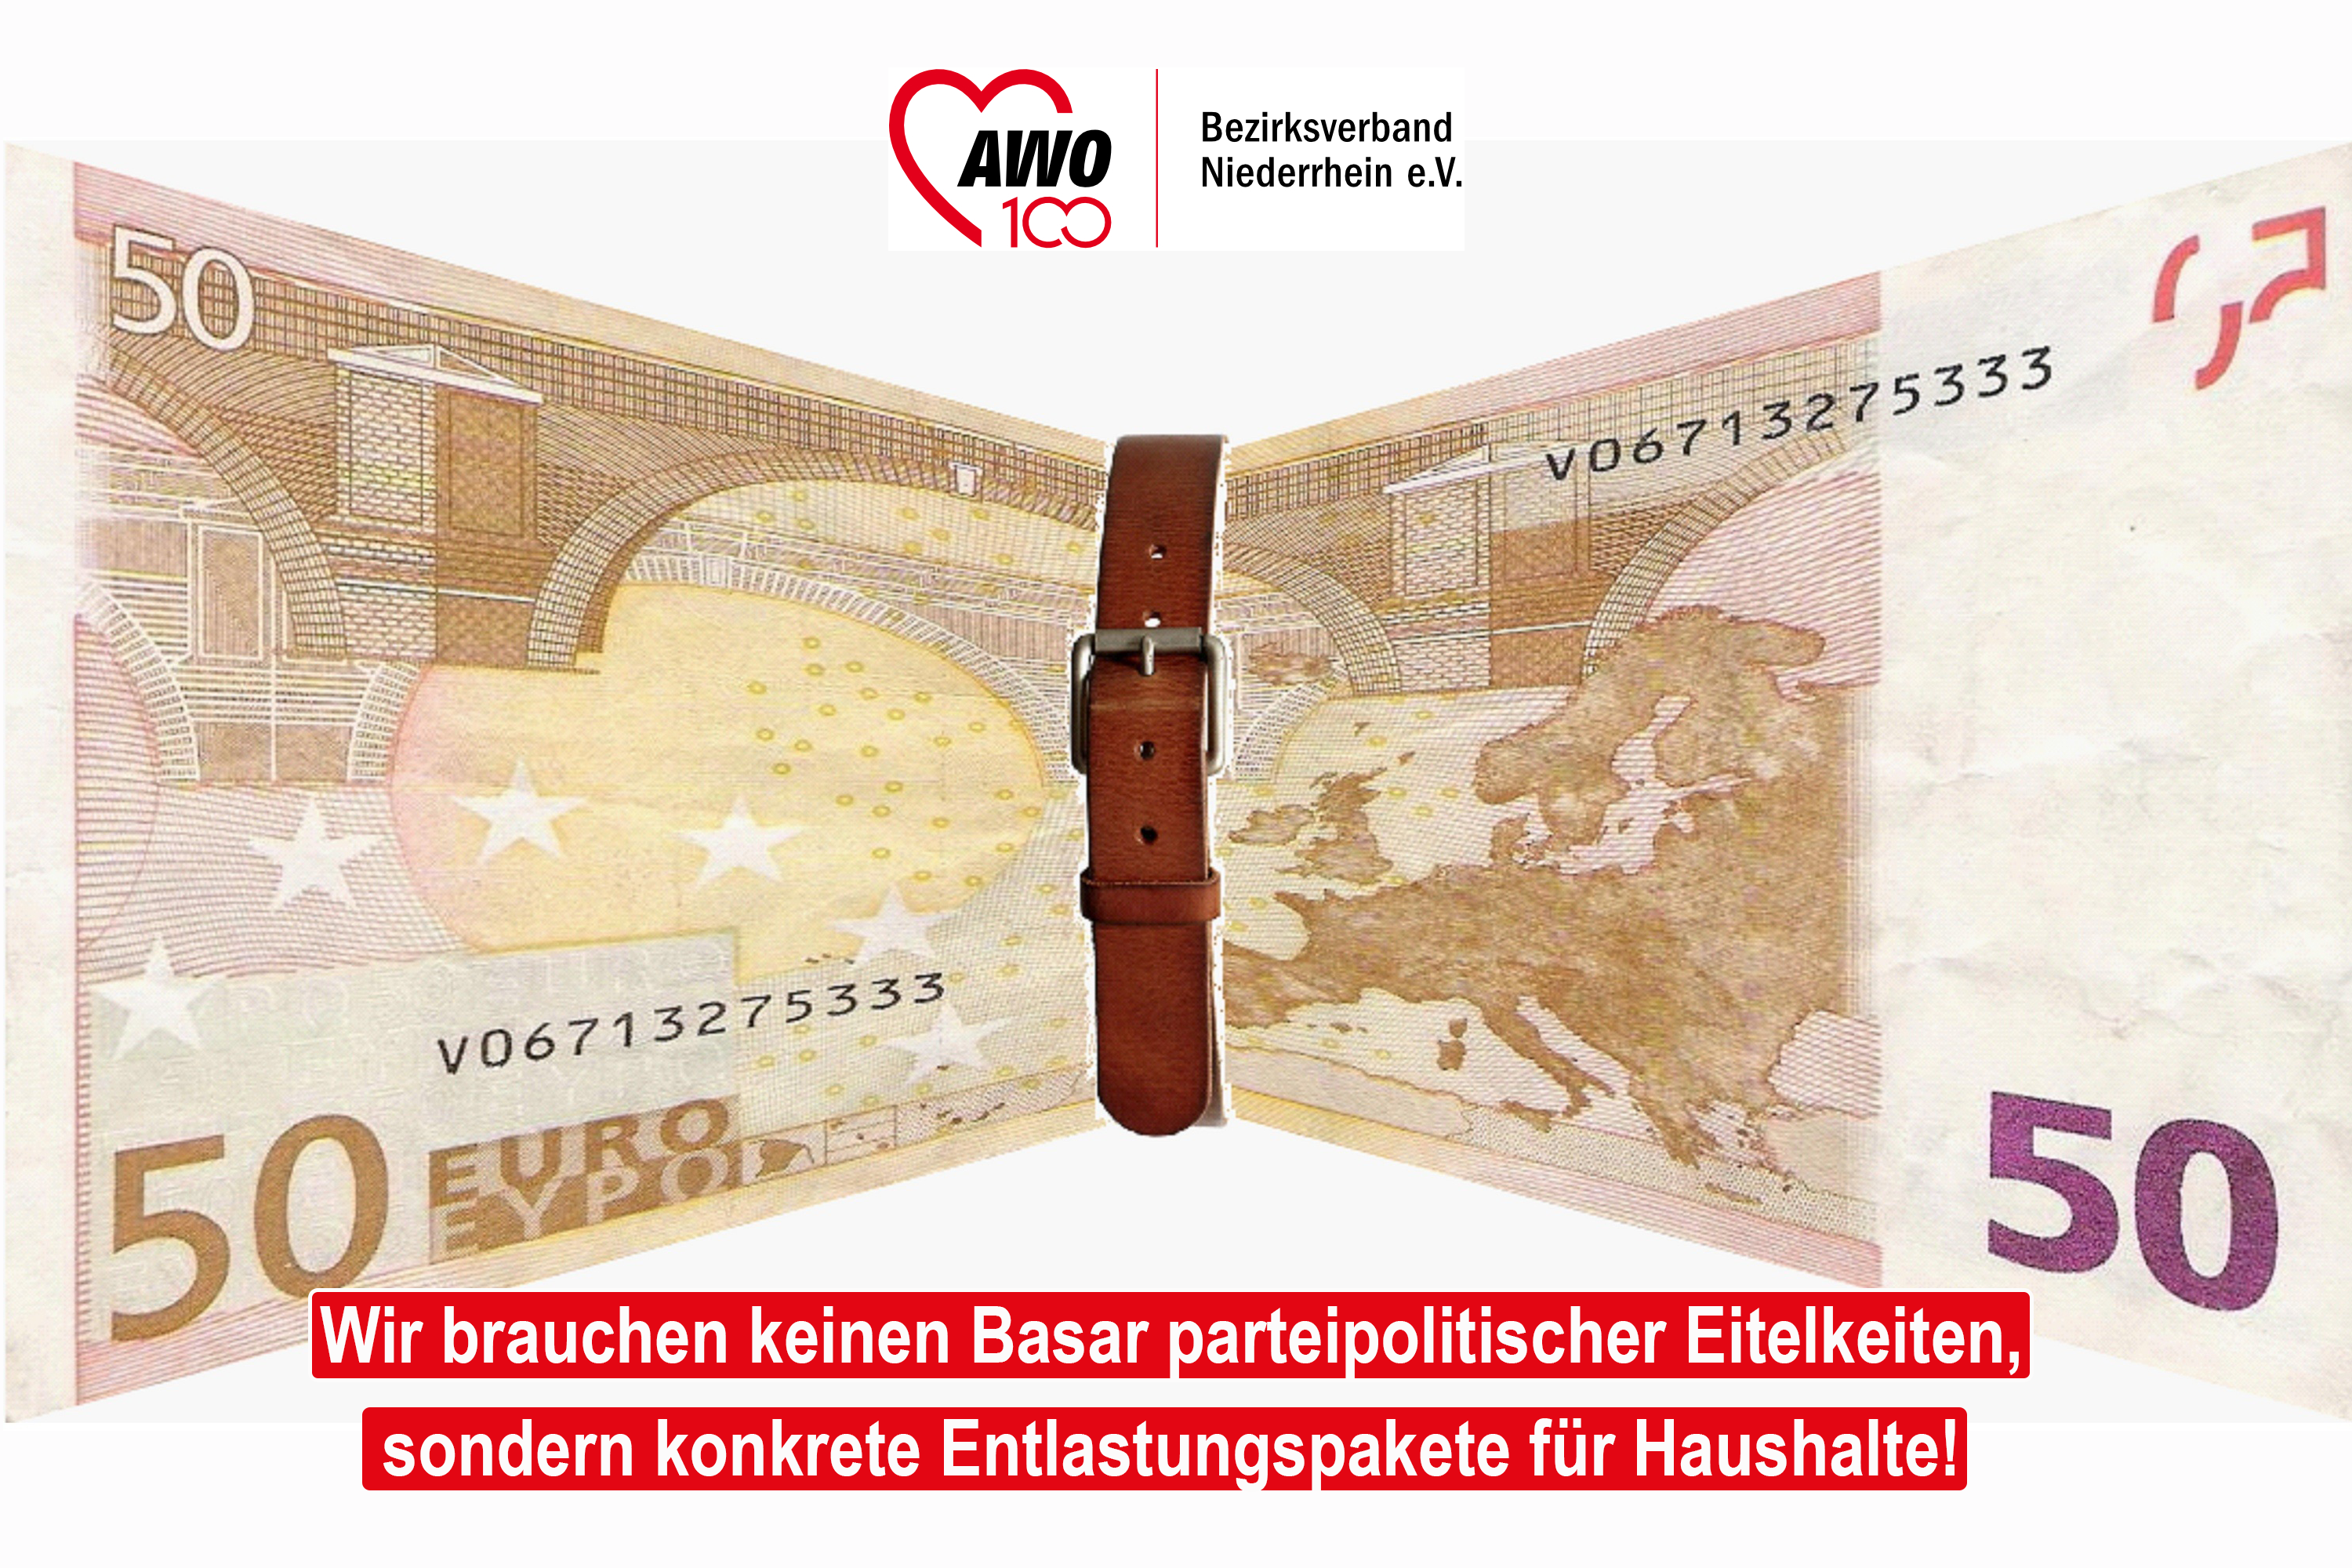 Das Foto zeigt einen 50 Euroschein und einen enger geschnallten Gürtel